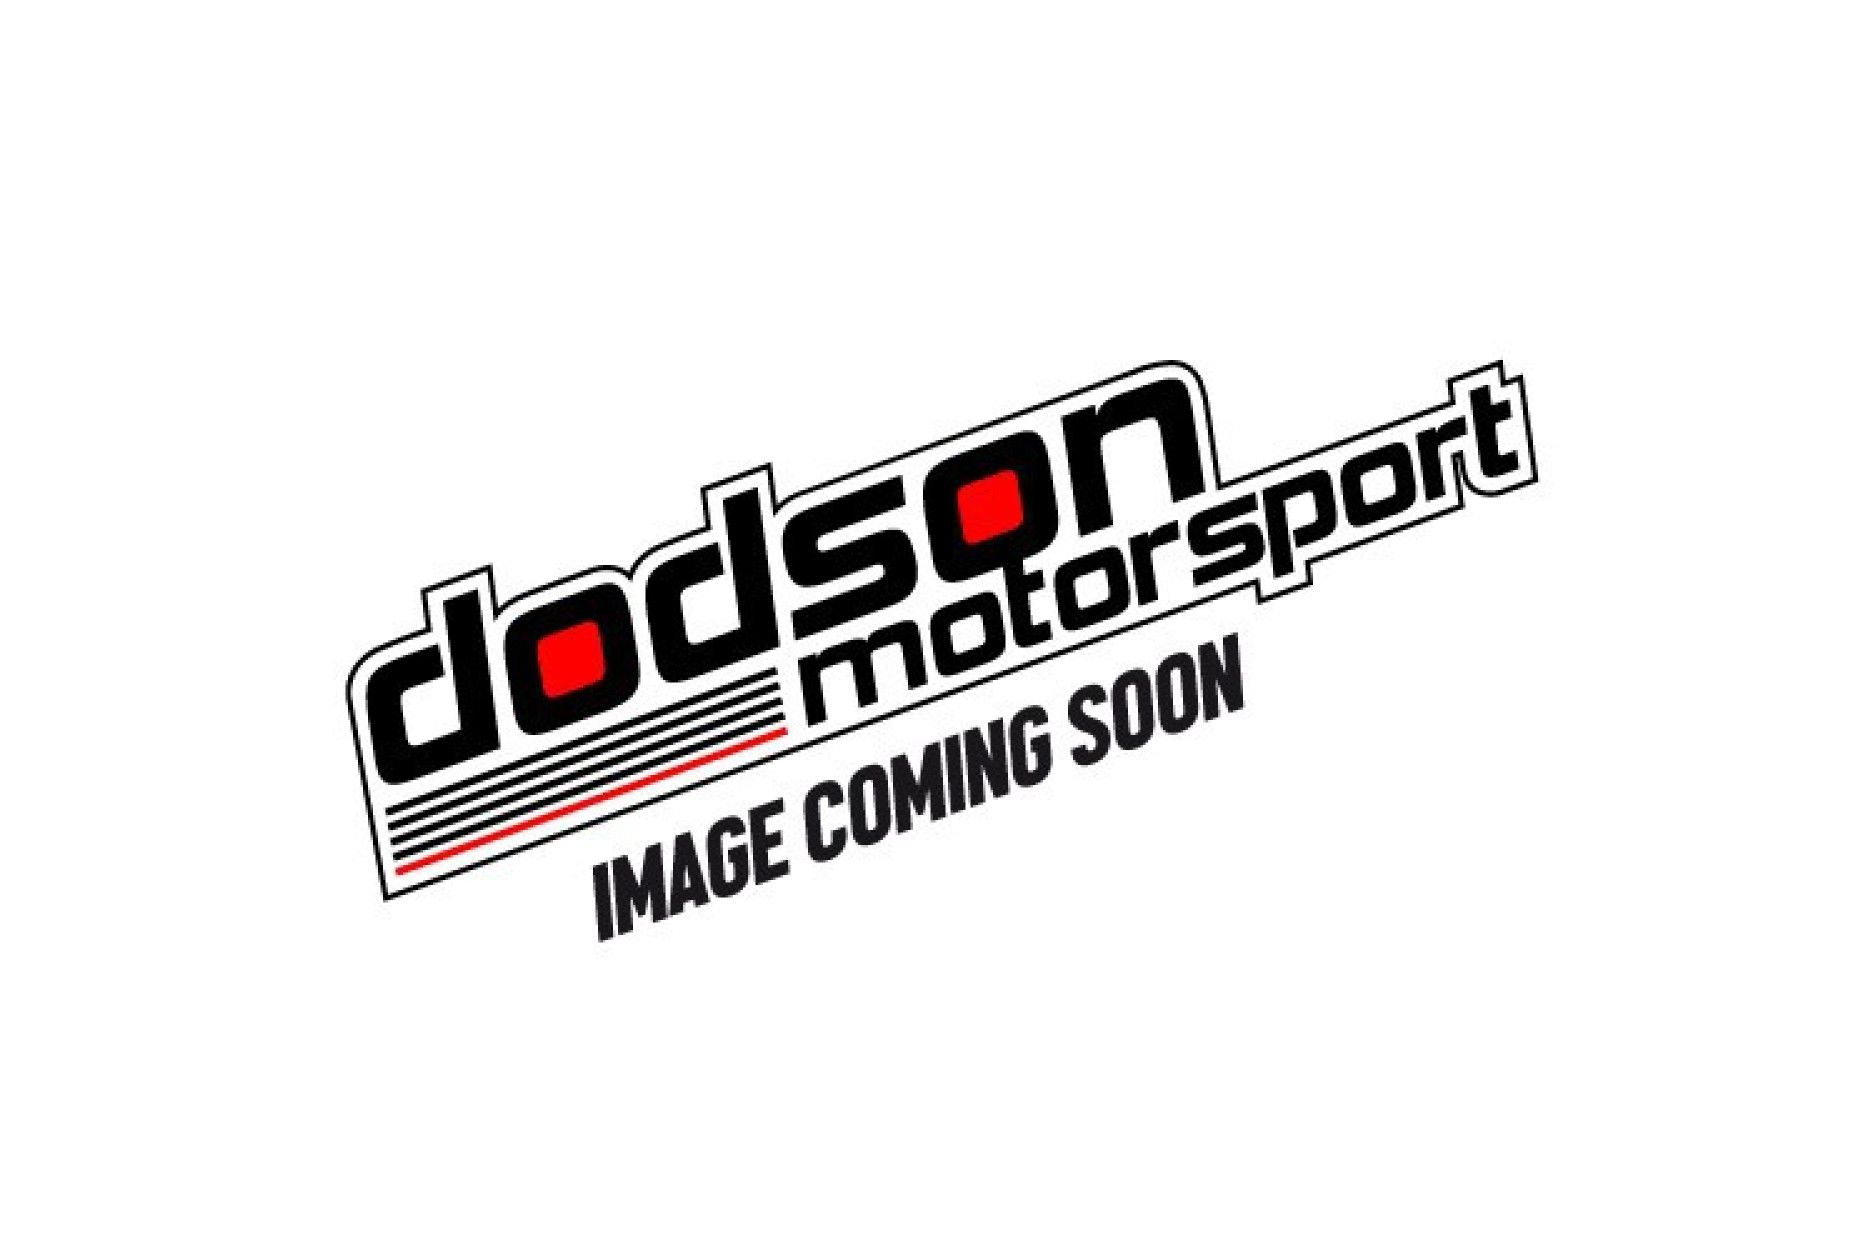 Dodson Eingangswellen-Werkzeug Nissan GTR R35